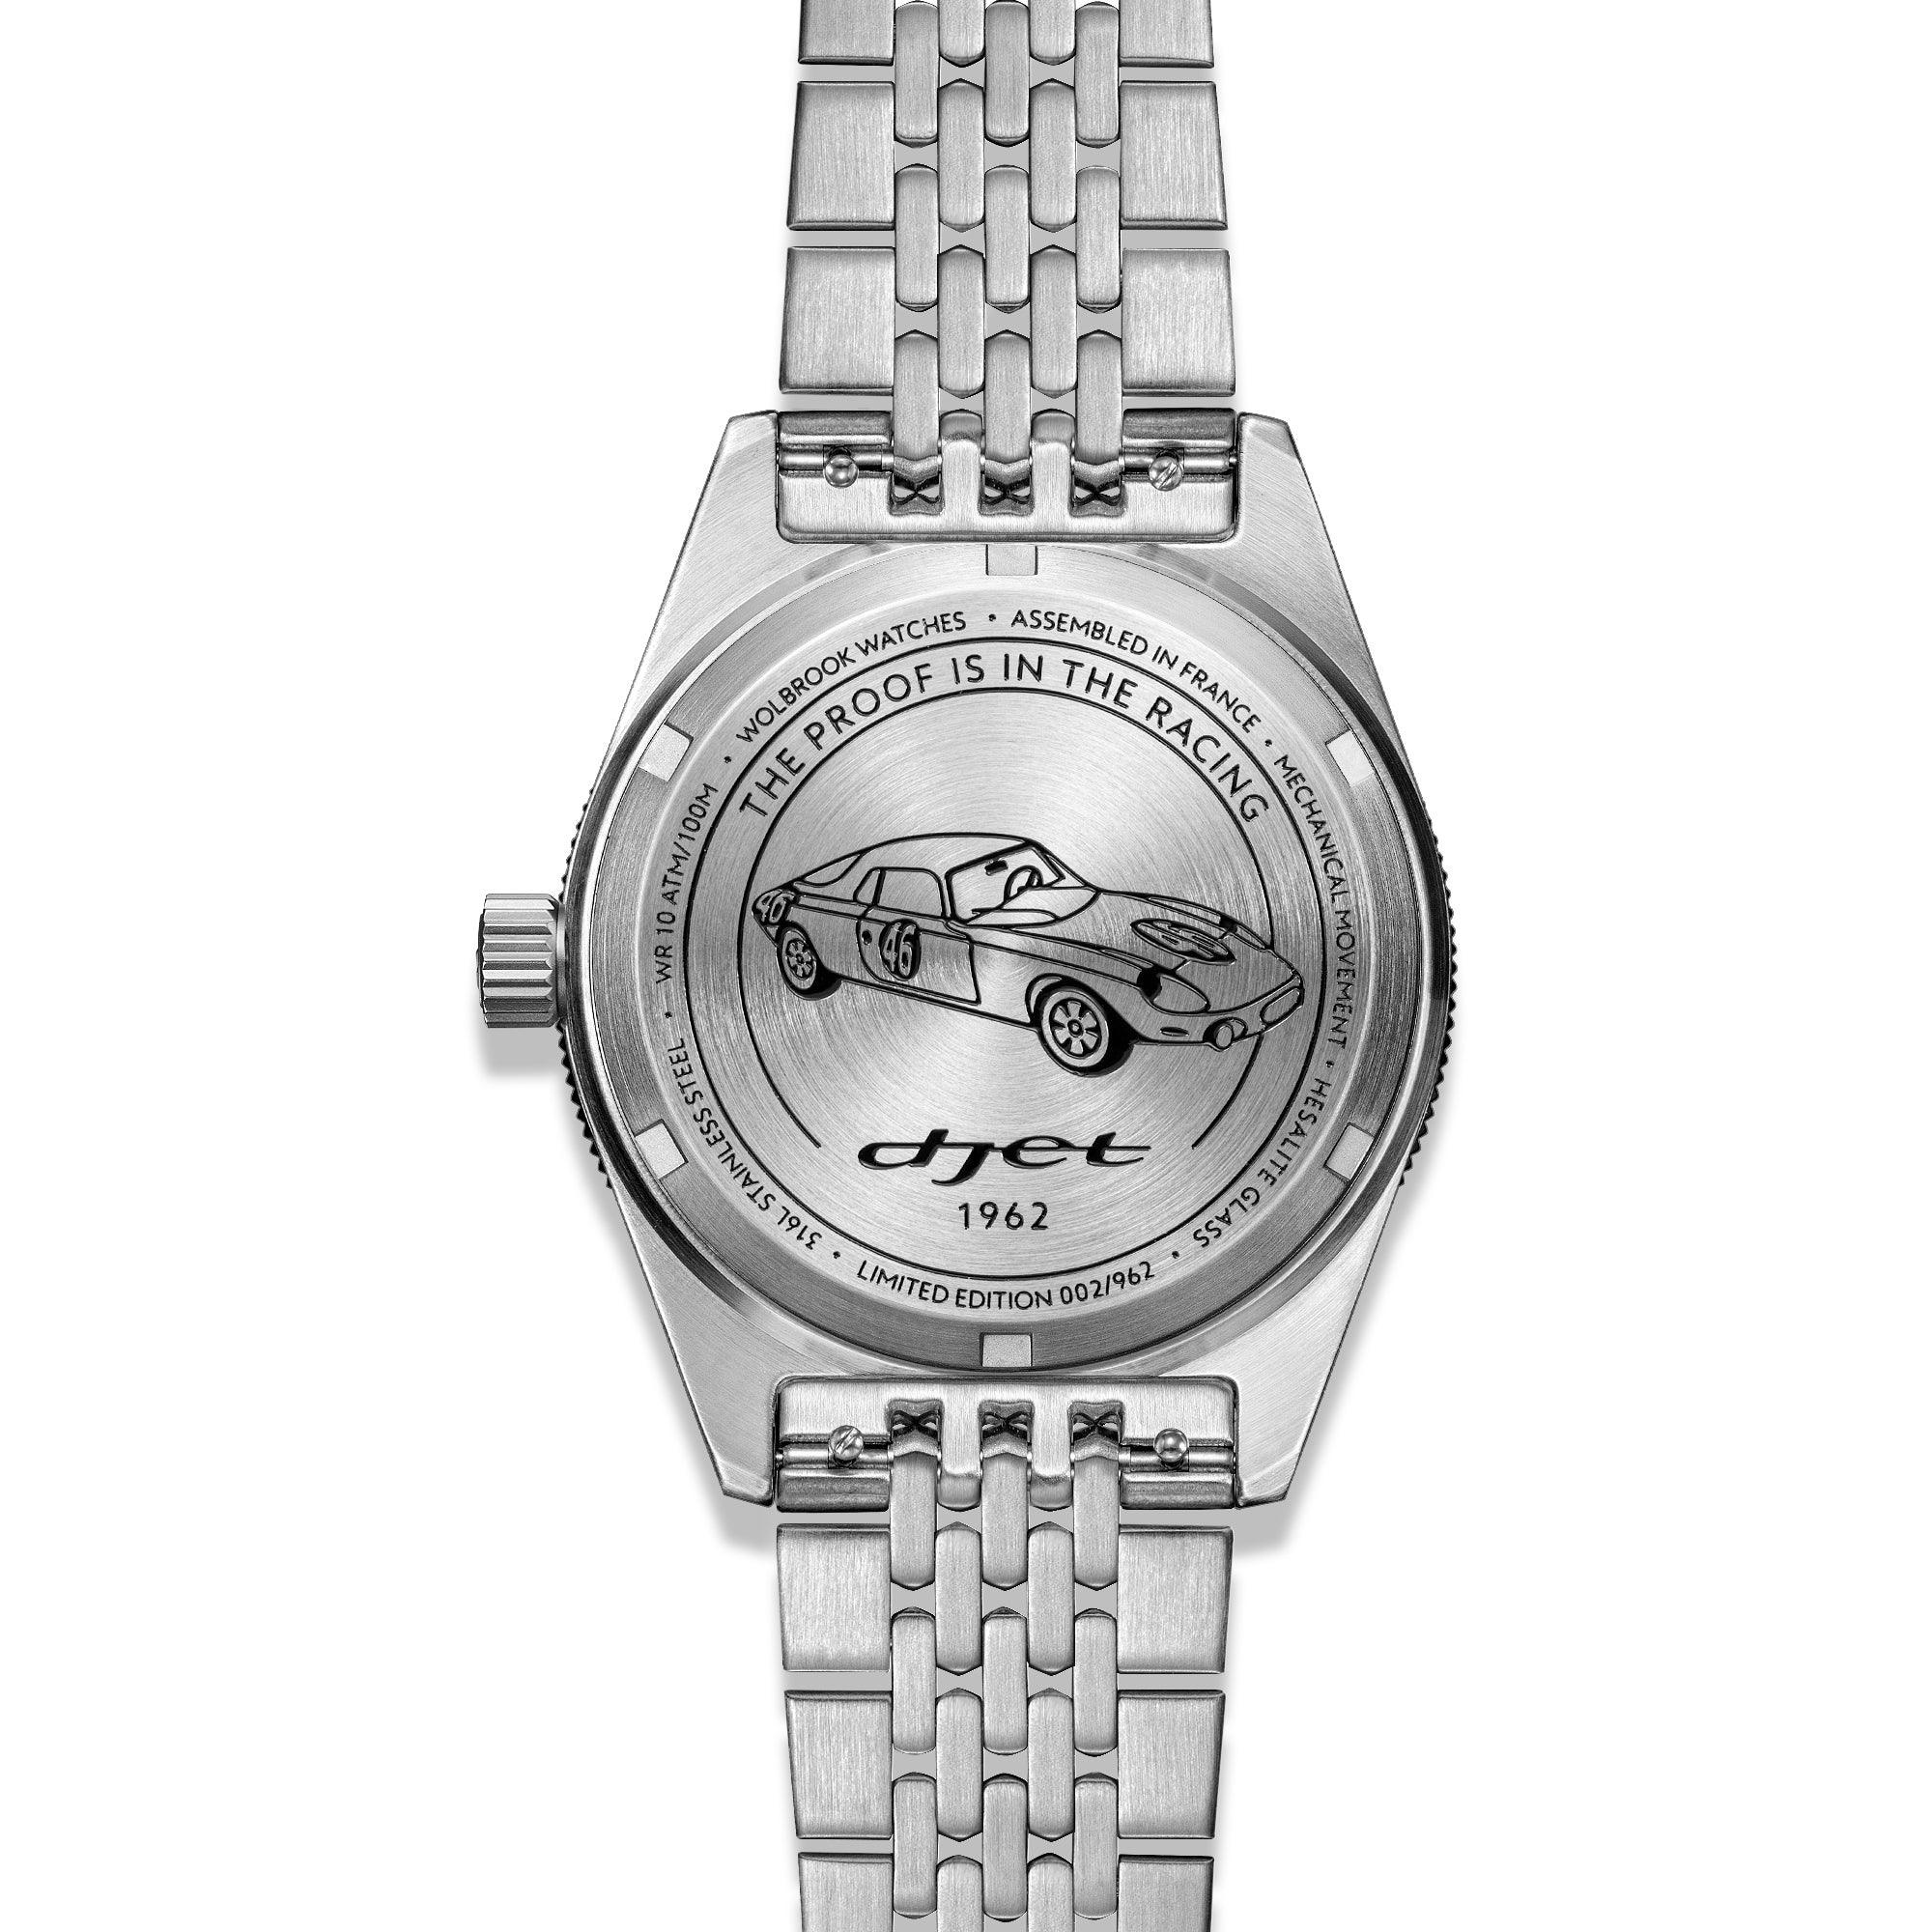 Grand Prix Professional Bracelet Racing Watch – René Bonnet Djet 1962 Limited Edition